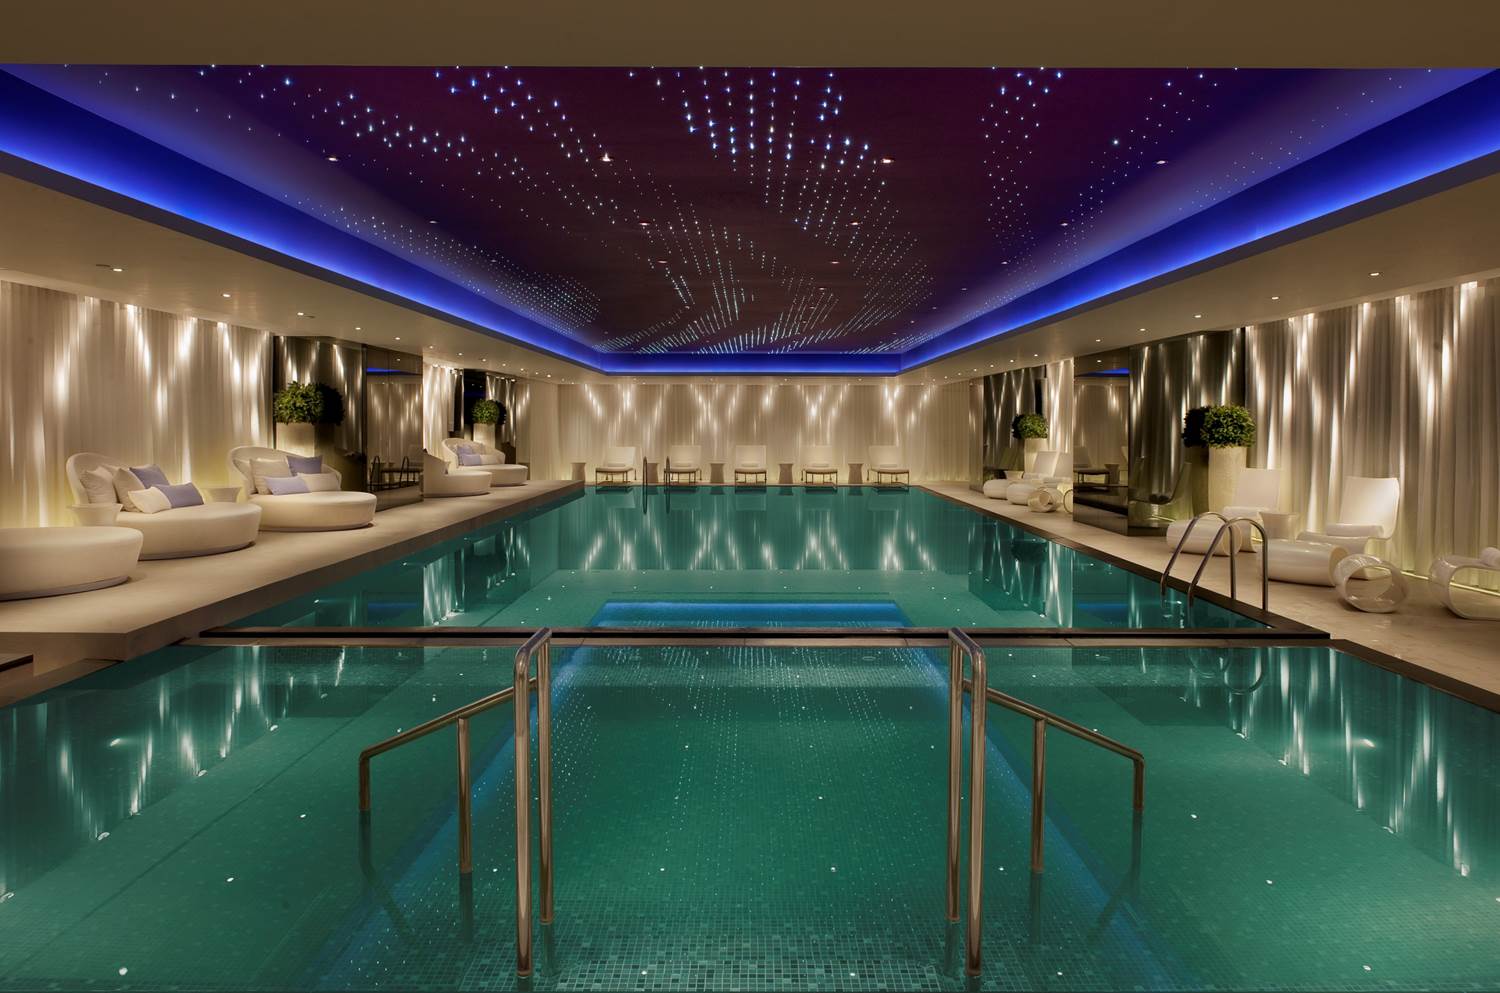 Hotel pools: The stylish indoor infinity pool at The Mira Hong Kong